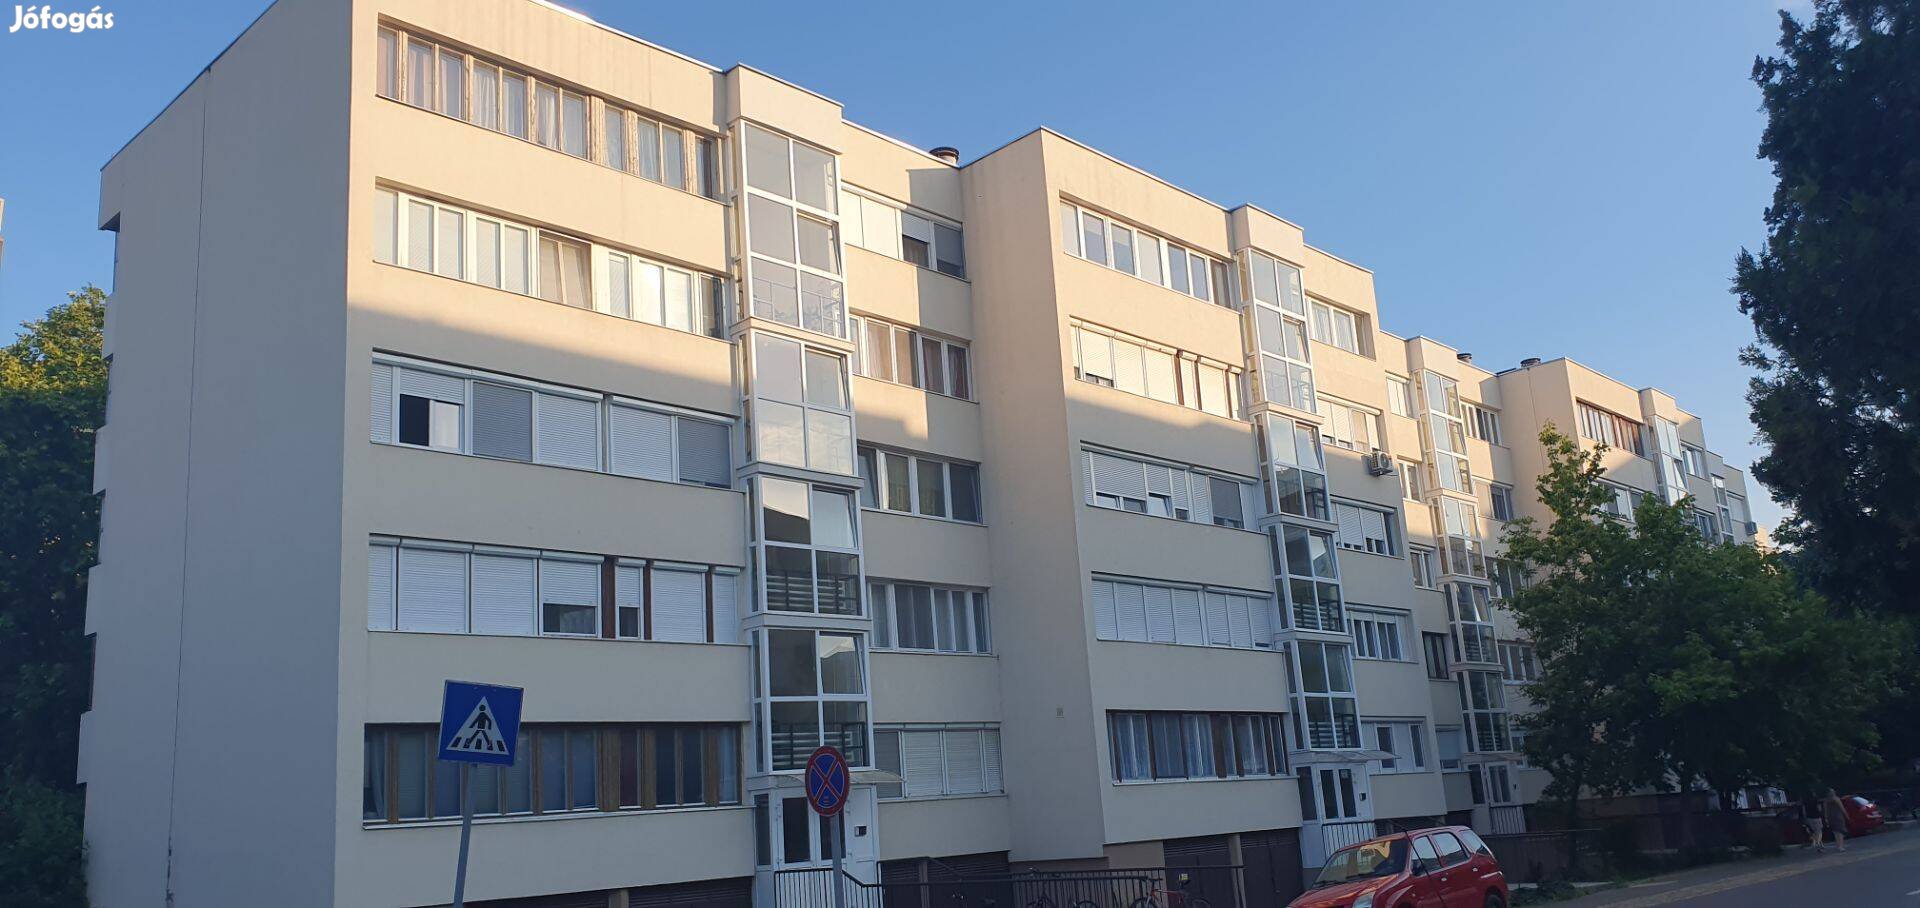 Egyetemek közelében a Martonfalvi utcán 2 szobás lakás eladó